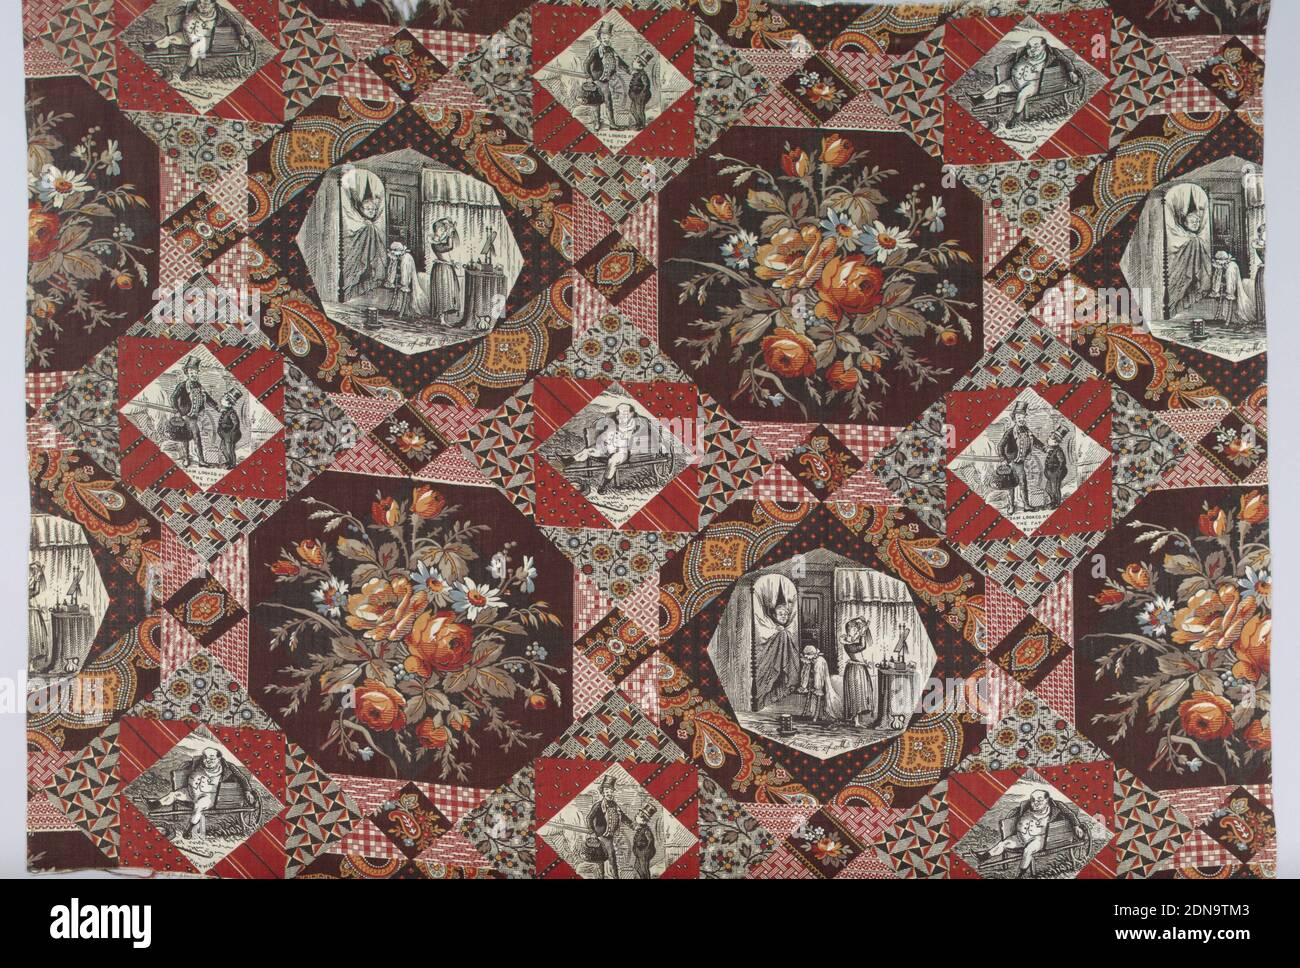 Tessuto, Medio: Cotone tecnica: Stampato da rullo inciso su tessitura piana, lavorazione a mosaico organizzato come reticolo di diamante quadrato. I motivi a metà caduta sono geometrici, floreali in scala ridotta o di tipo paisley. Un medaglione ottagonale contiene un mazzo di fiori. Le scene di Pickwick Papers sono incluse: 'Pickwick', 'Sam guarded at the Fat Boy', e 'allarmante posizione di MR. Pickwick.', Inghilterra, 1875–85, tessuti stampati, tinti e dipinti, tessile Foto Stock